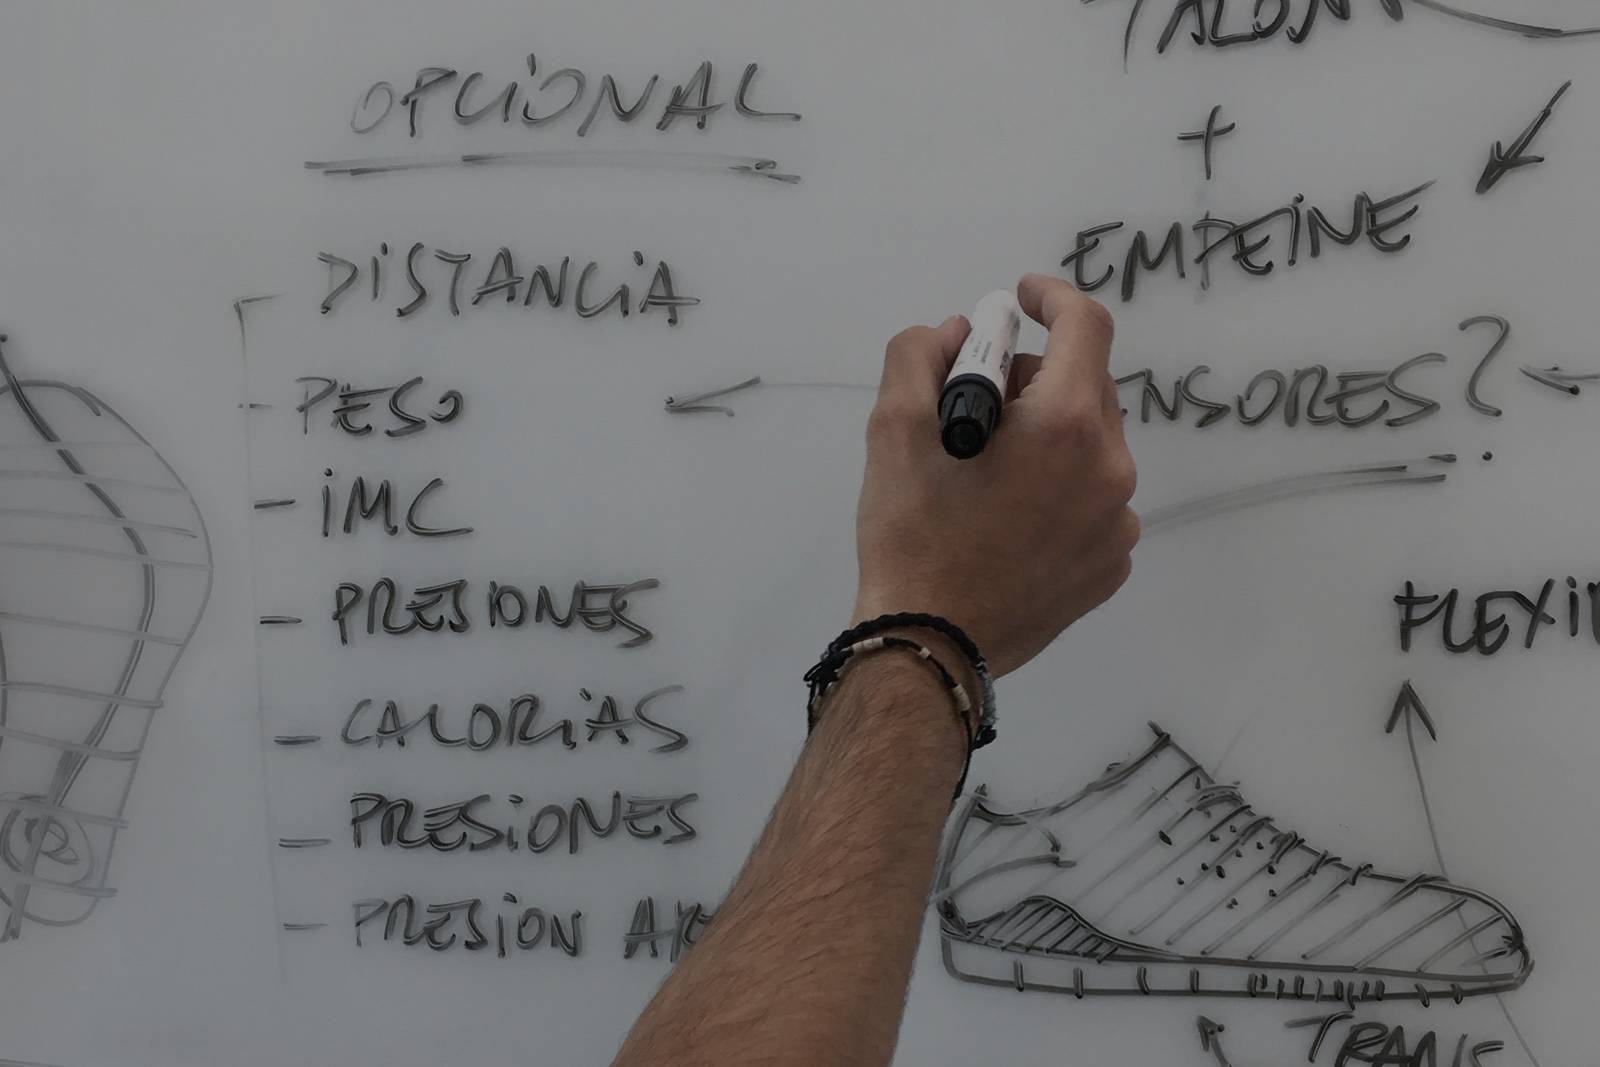 Fotografía de técnico escribiendo en pizarra la descripción del prototipo de una zapatilla deportiva